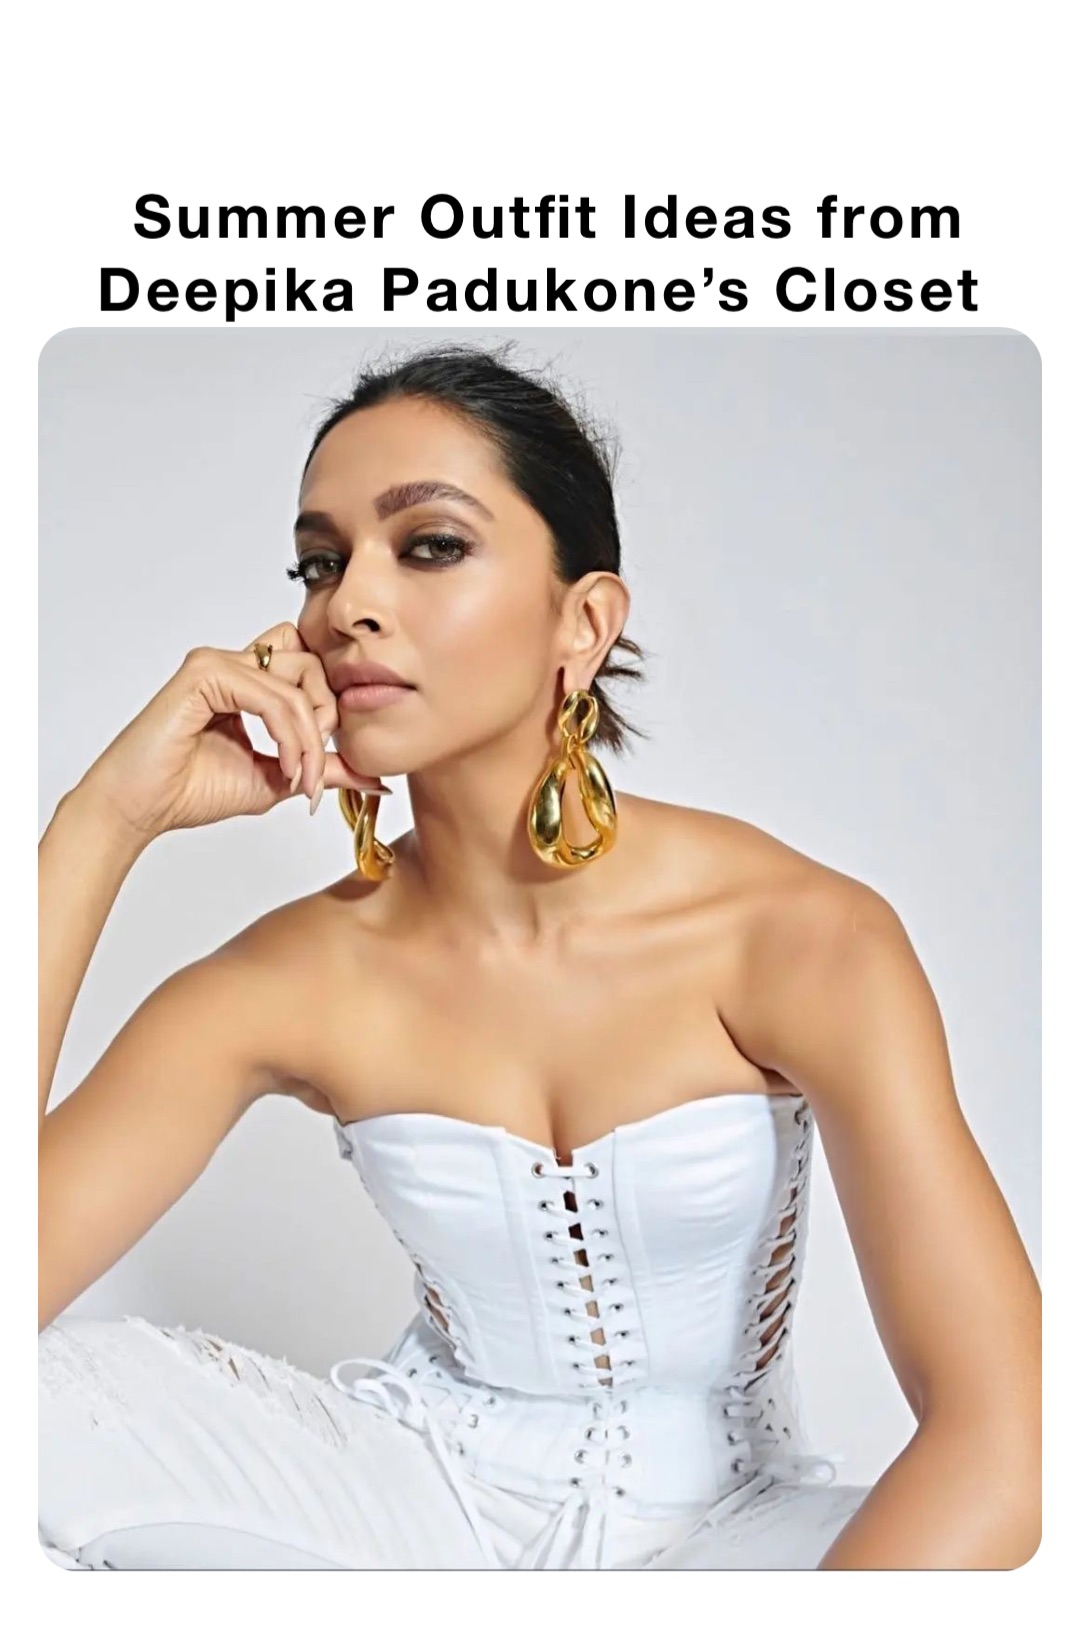 Summer Outfit Ideas from Deepika Padukone’s Closet